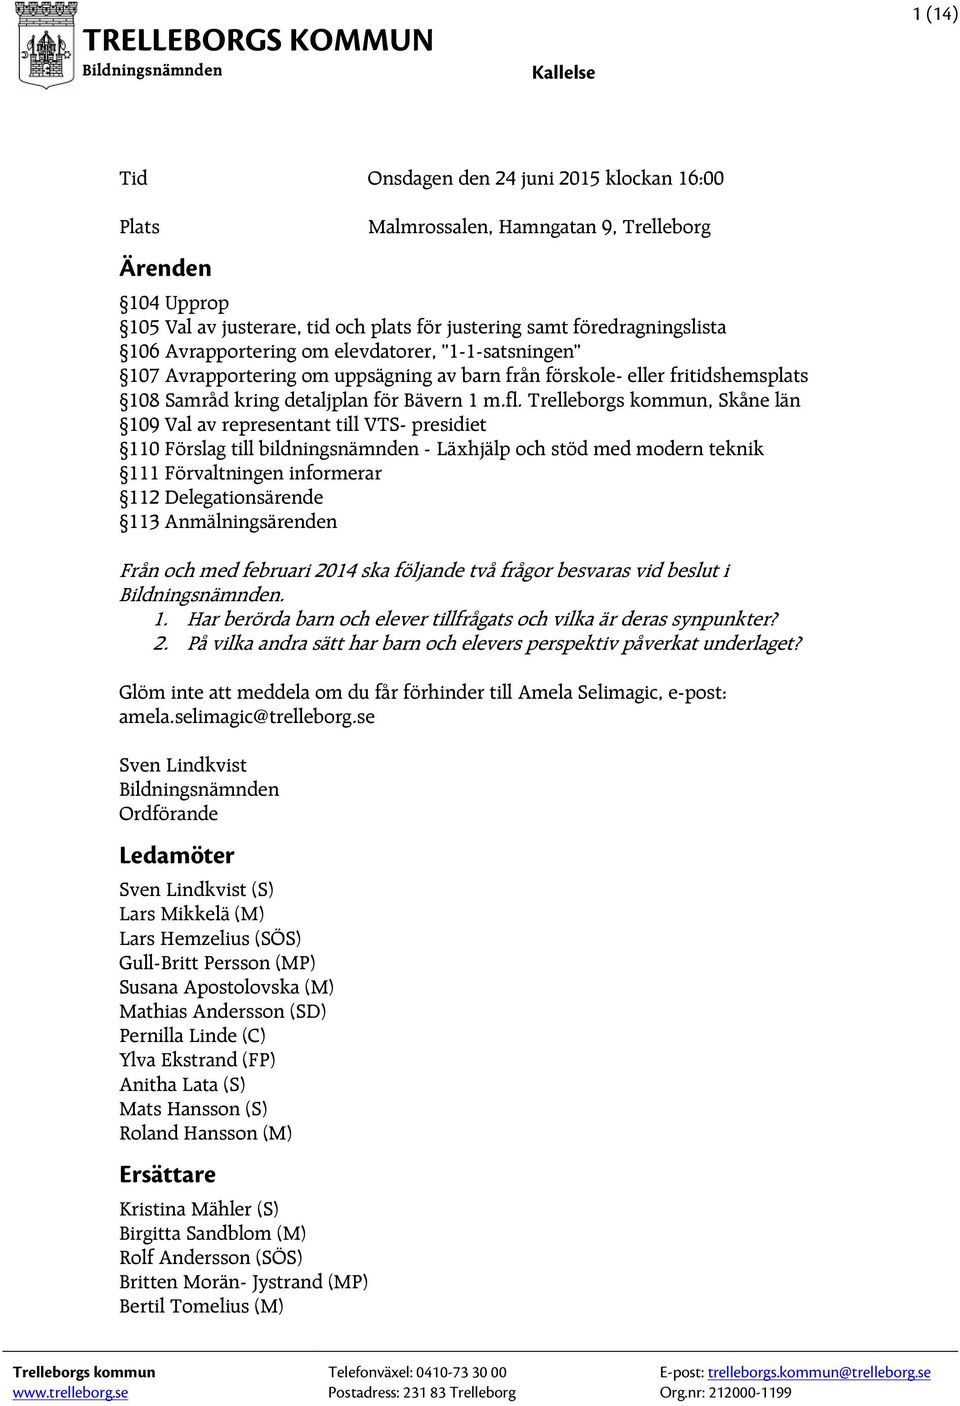 Trelleborgs kommun, Skåne län 109 Val av representant till VTS- presidiet 110 Förslag till bildningsnämnden - Läxhjälp och stöd med modern teknik 111 Förvaltningen informerar 112 Delegationsärende